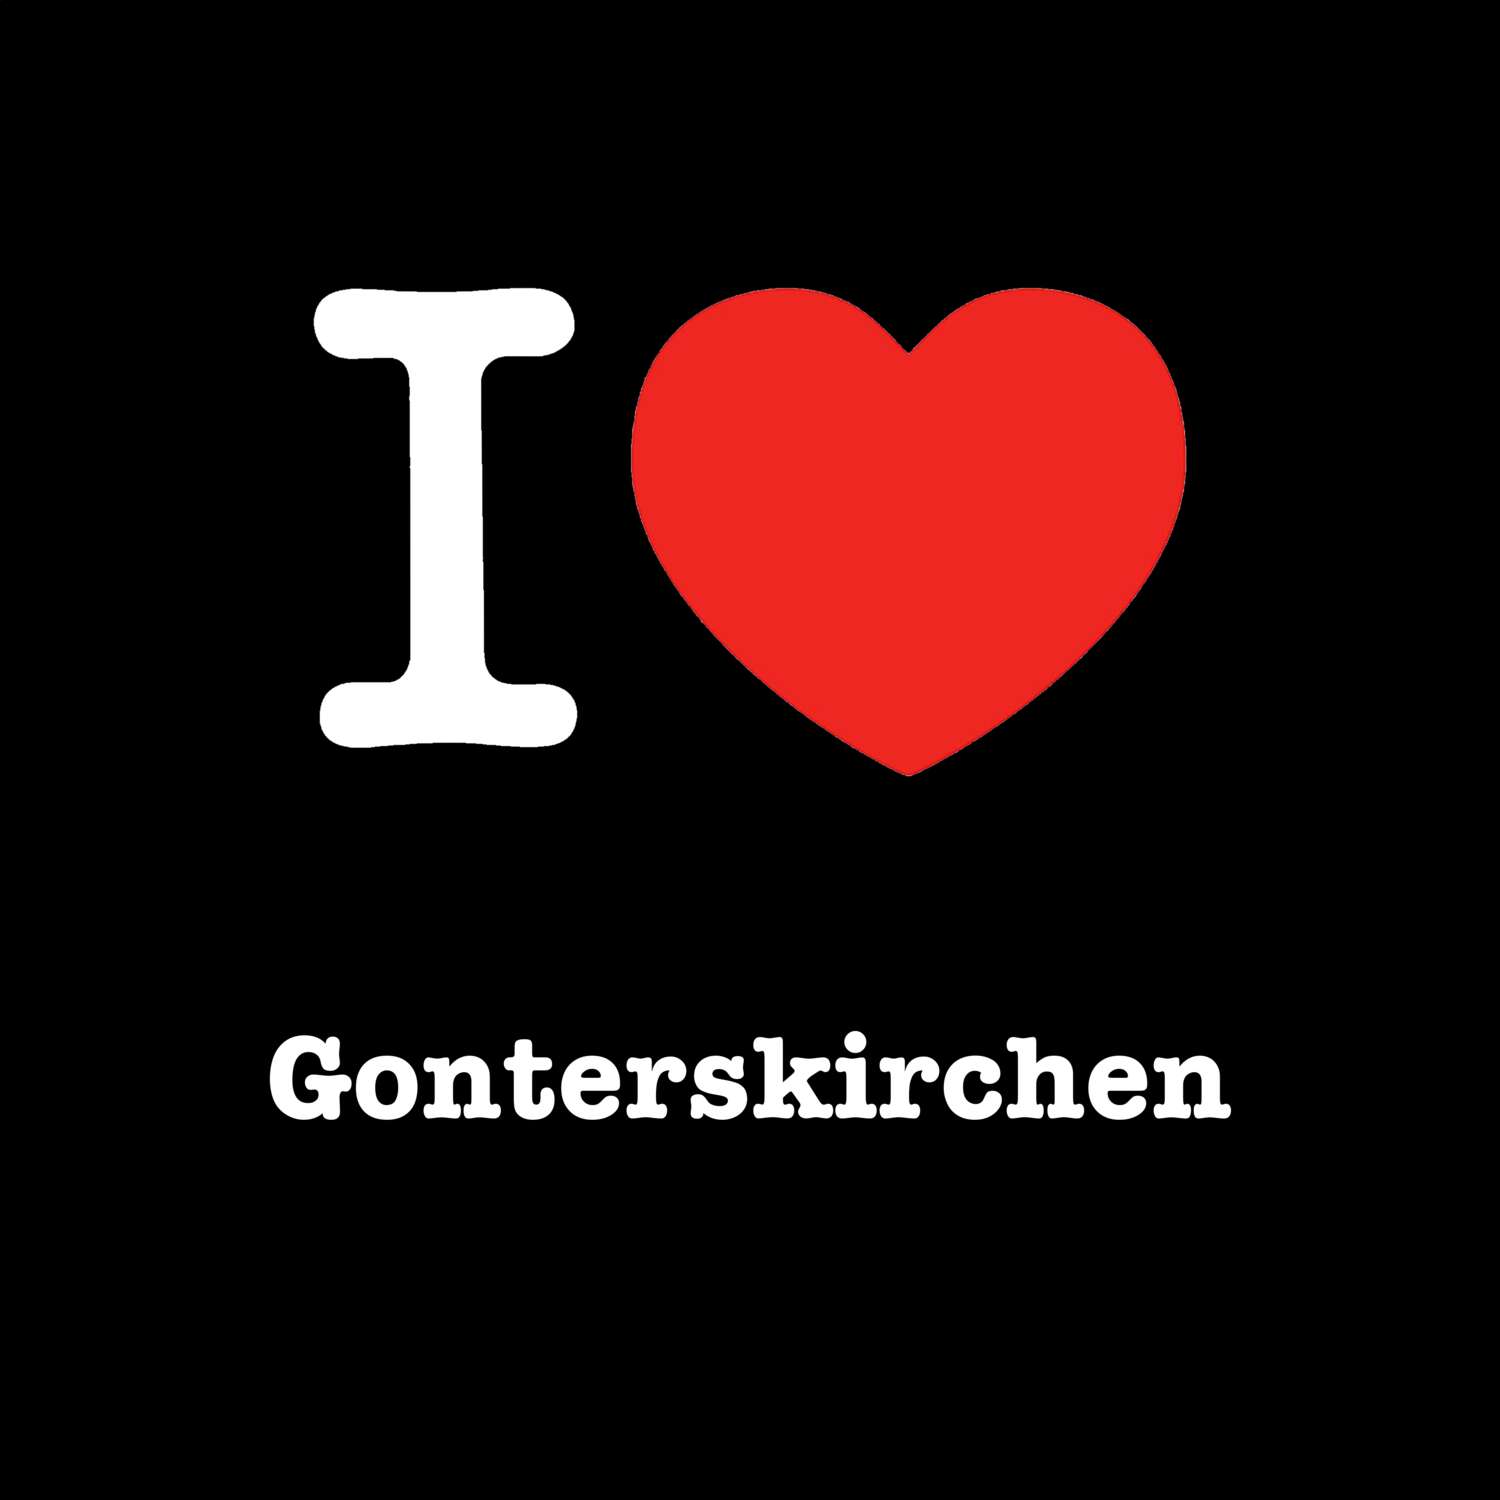 Gonterskirchen T-Shirt »I love«